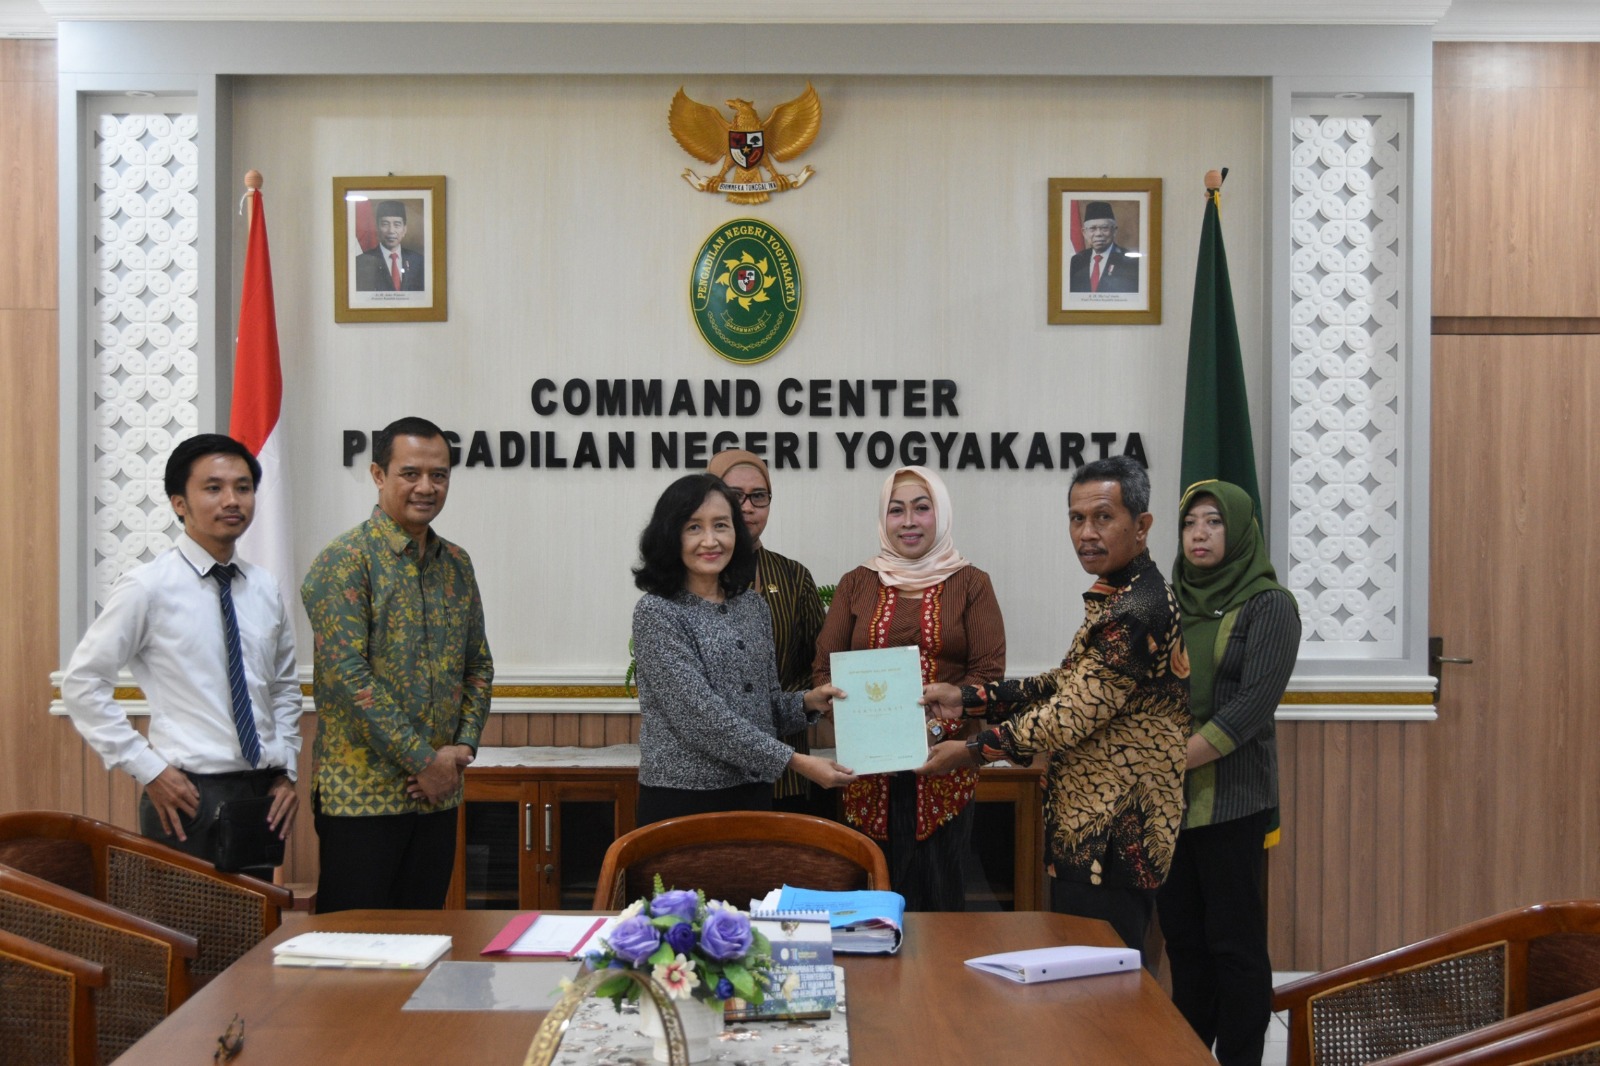 Pelaksanaan Eksekusi Perkara Perdata secara Sukarela Pengadilan Negeri Yogyakarta